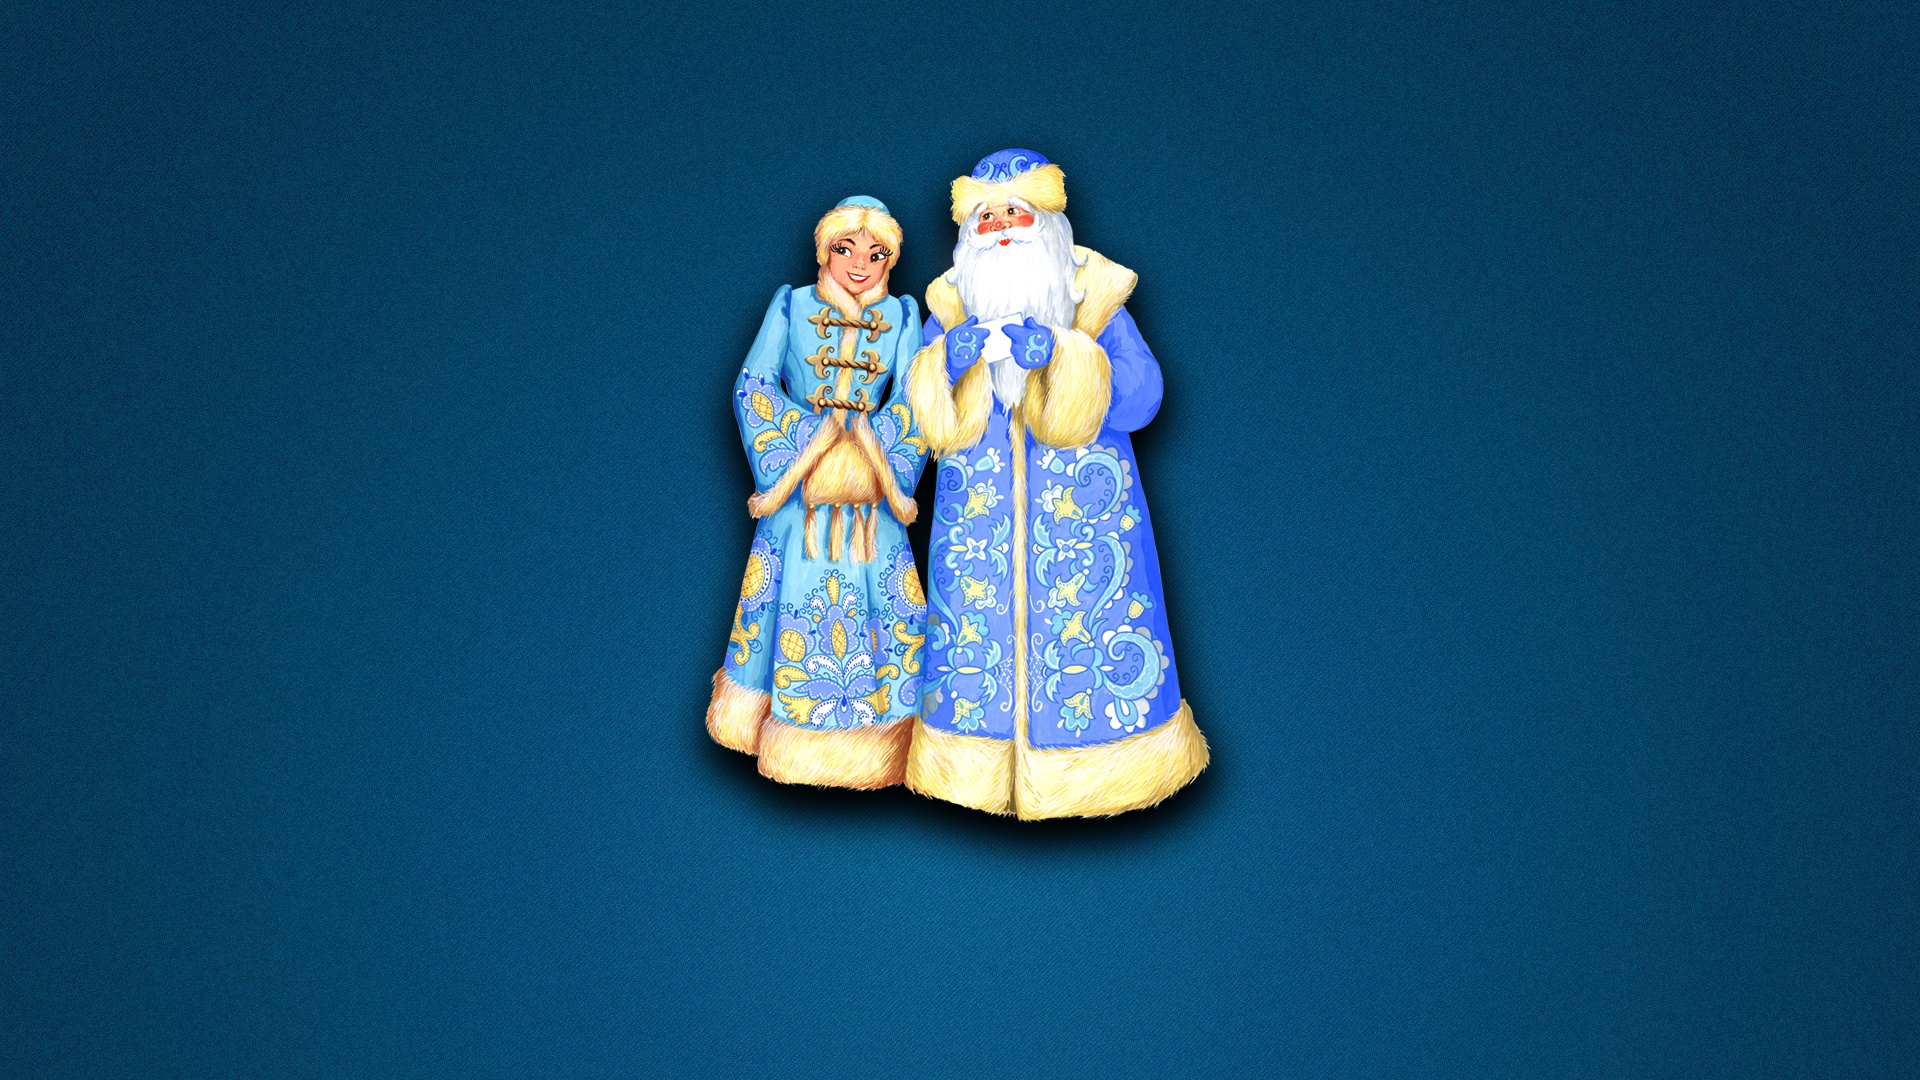 Обои на рабочий стол с Дедом Морозом и Снегурочкой 2024